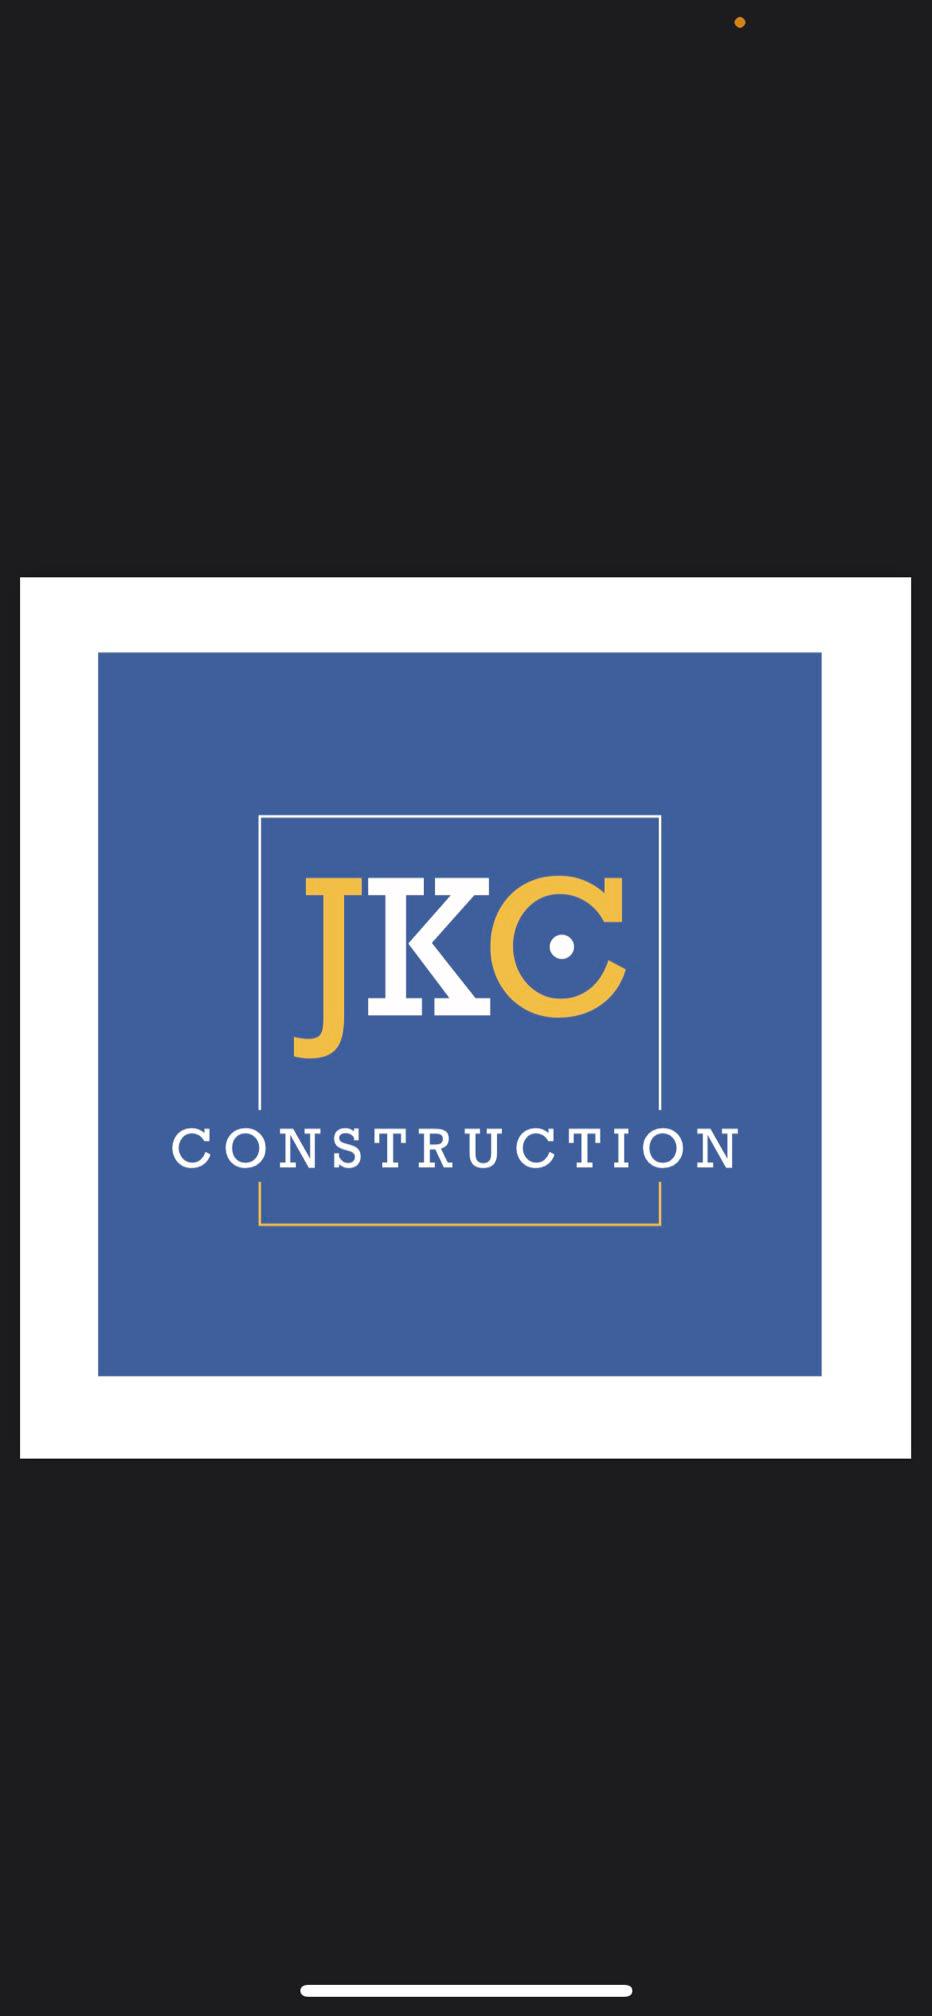 Images JKC Construction Ltd